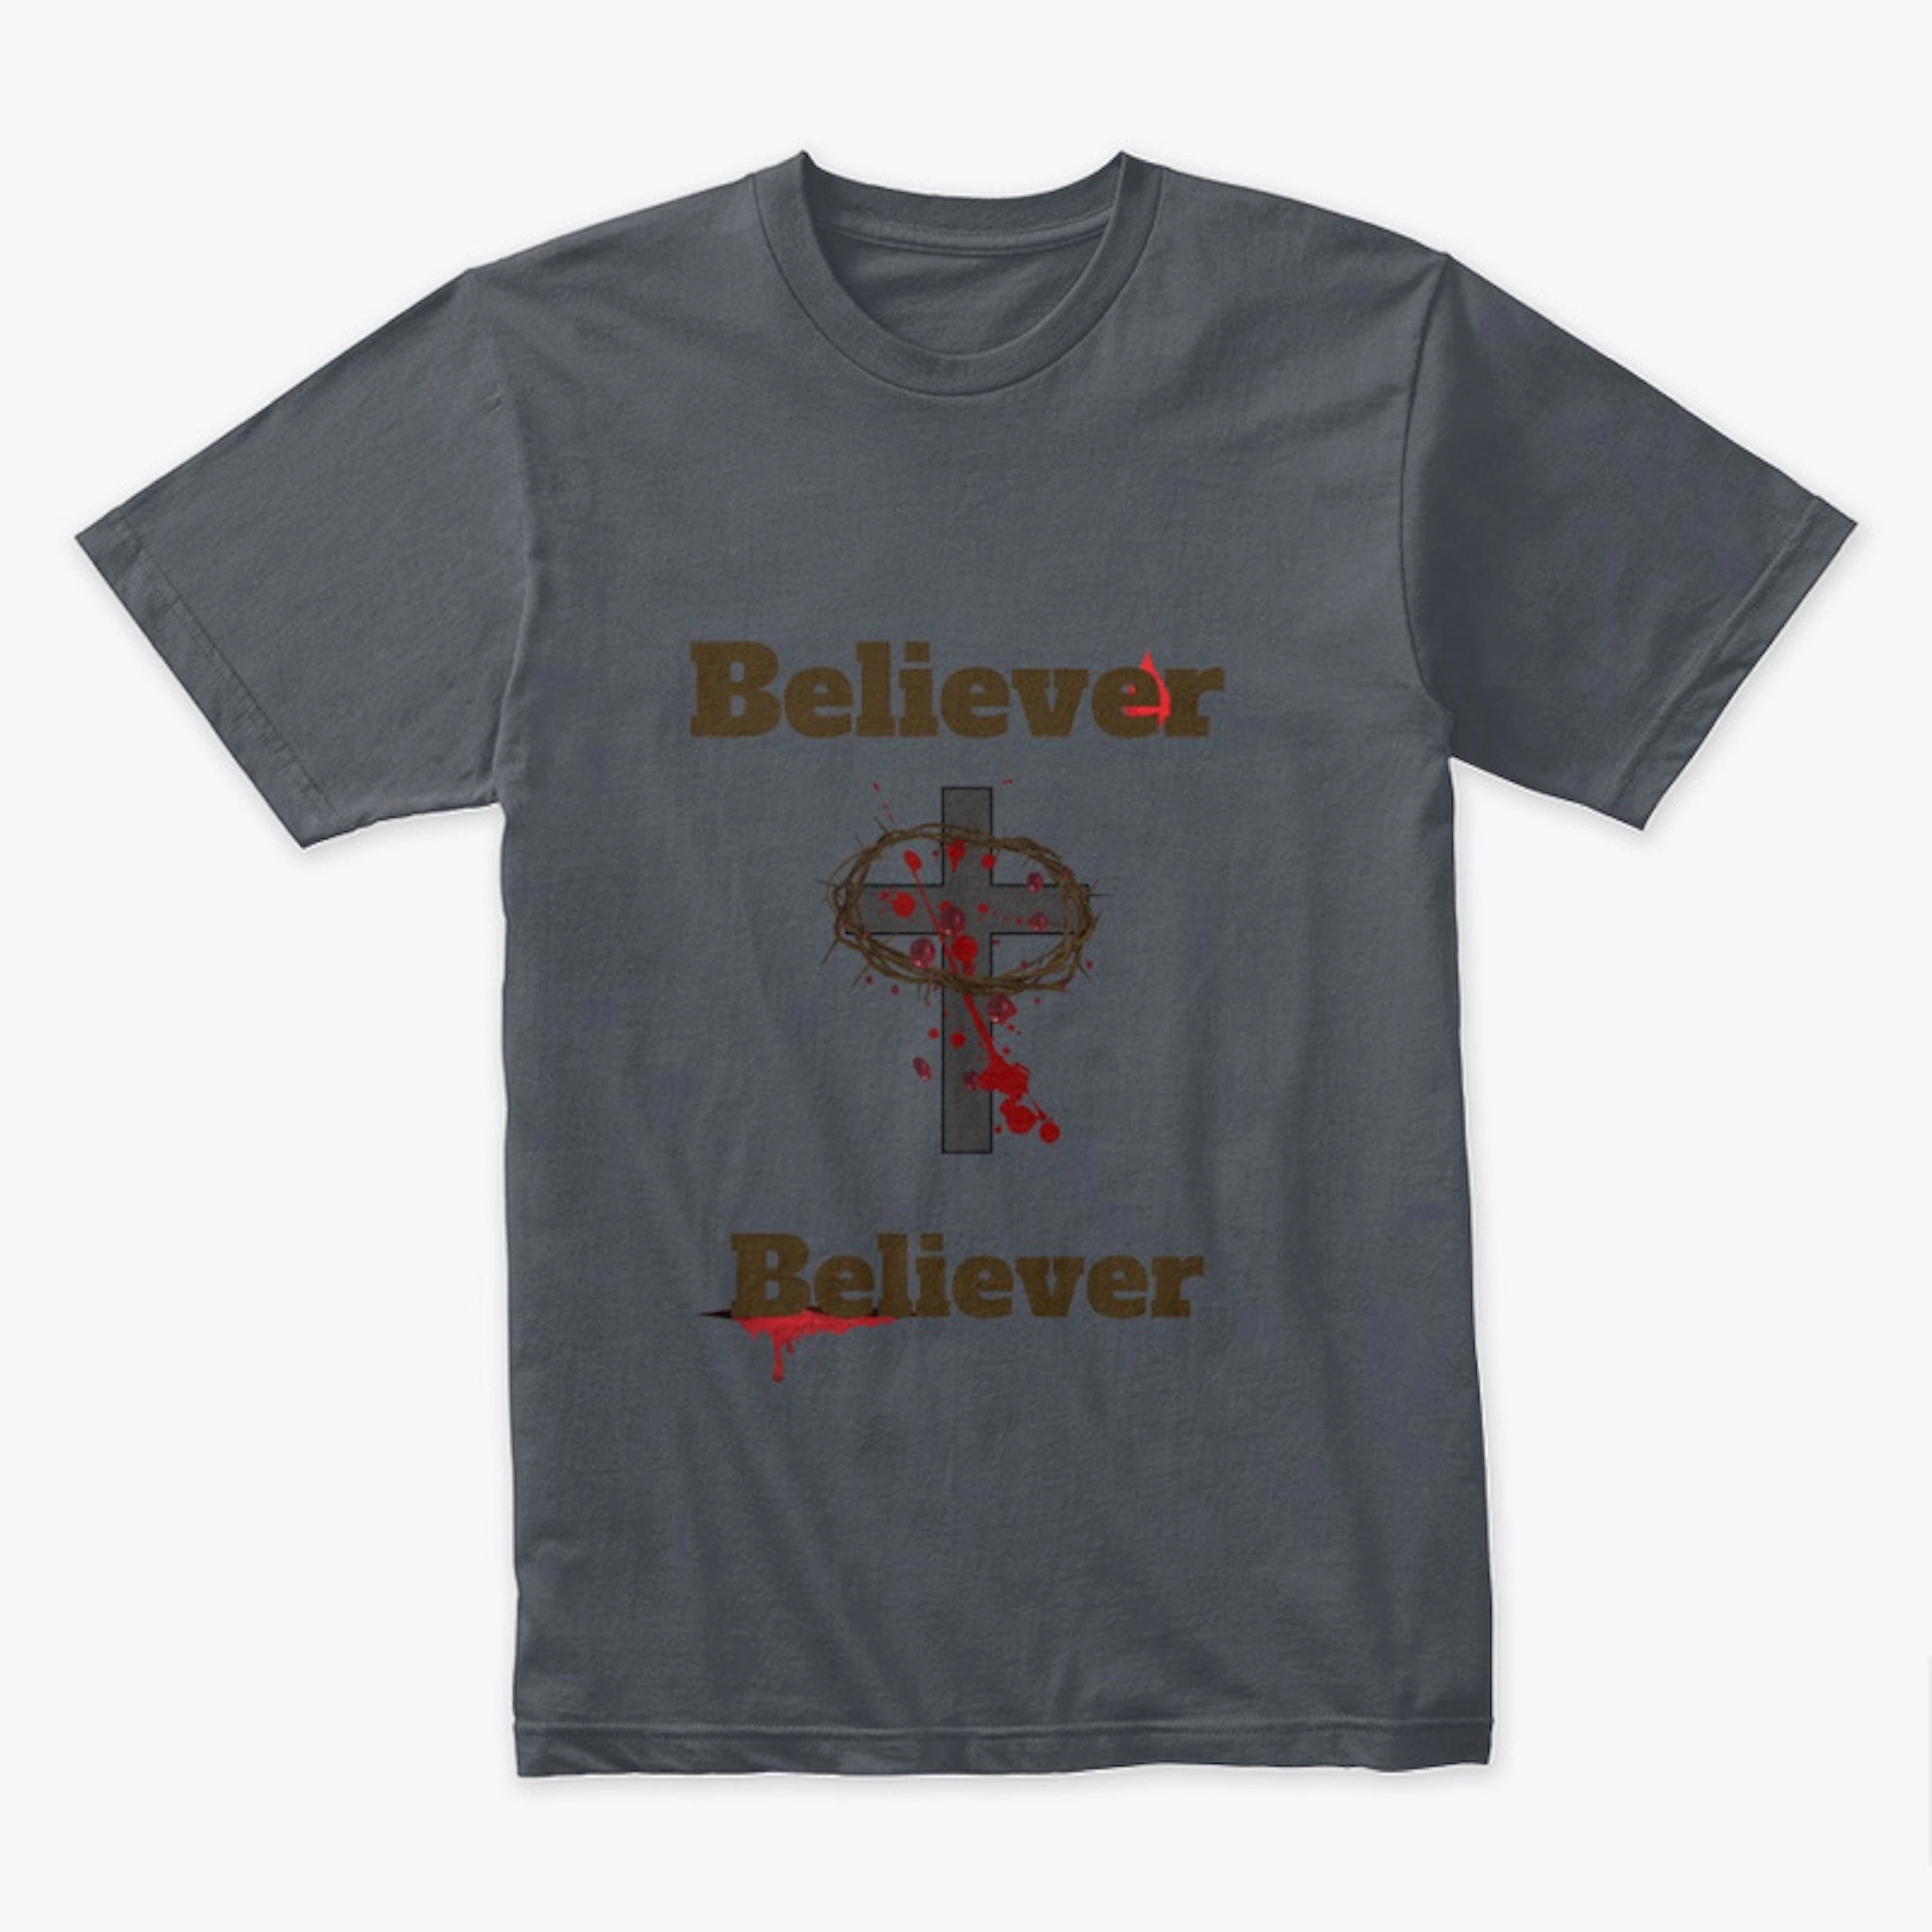 BelievertoBeliever tshirt